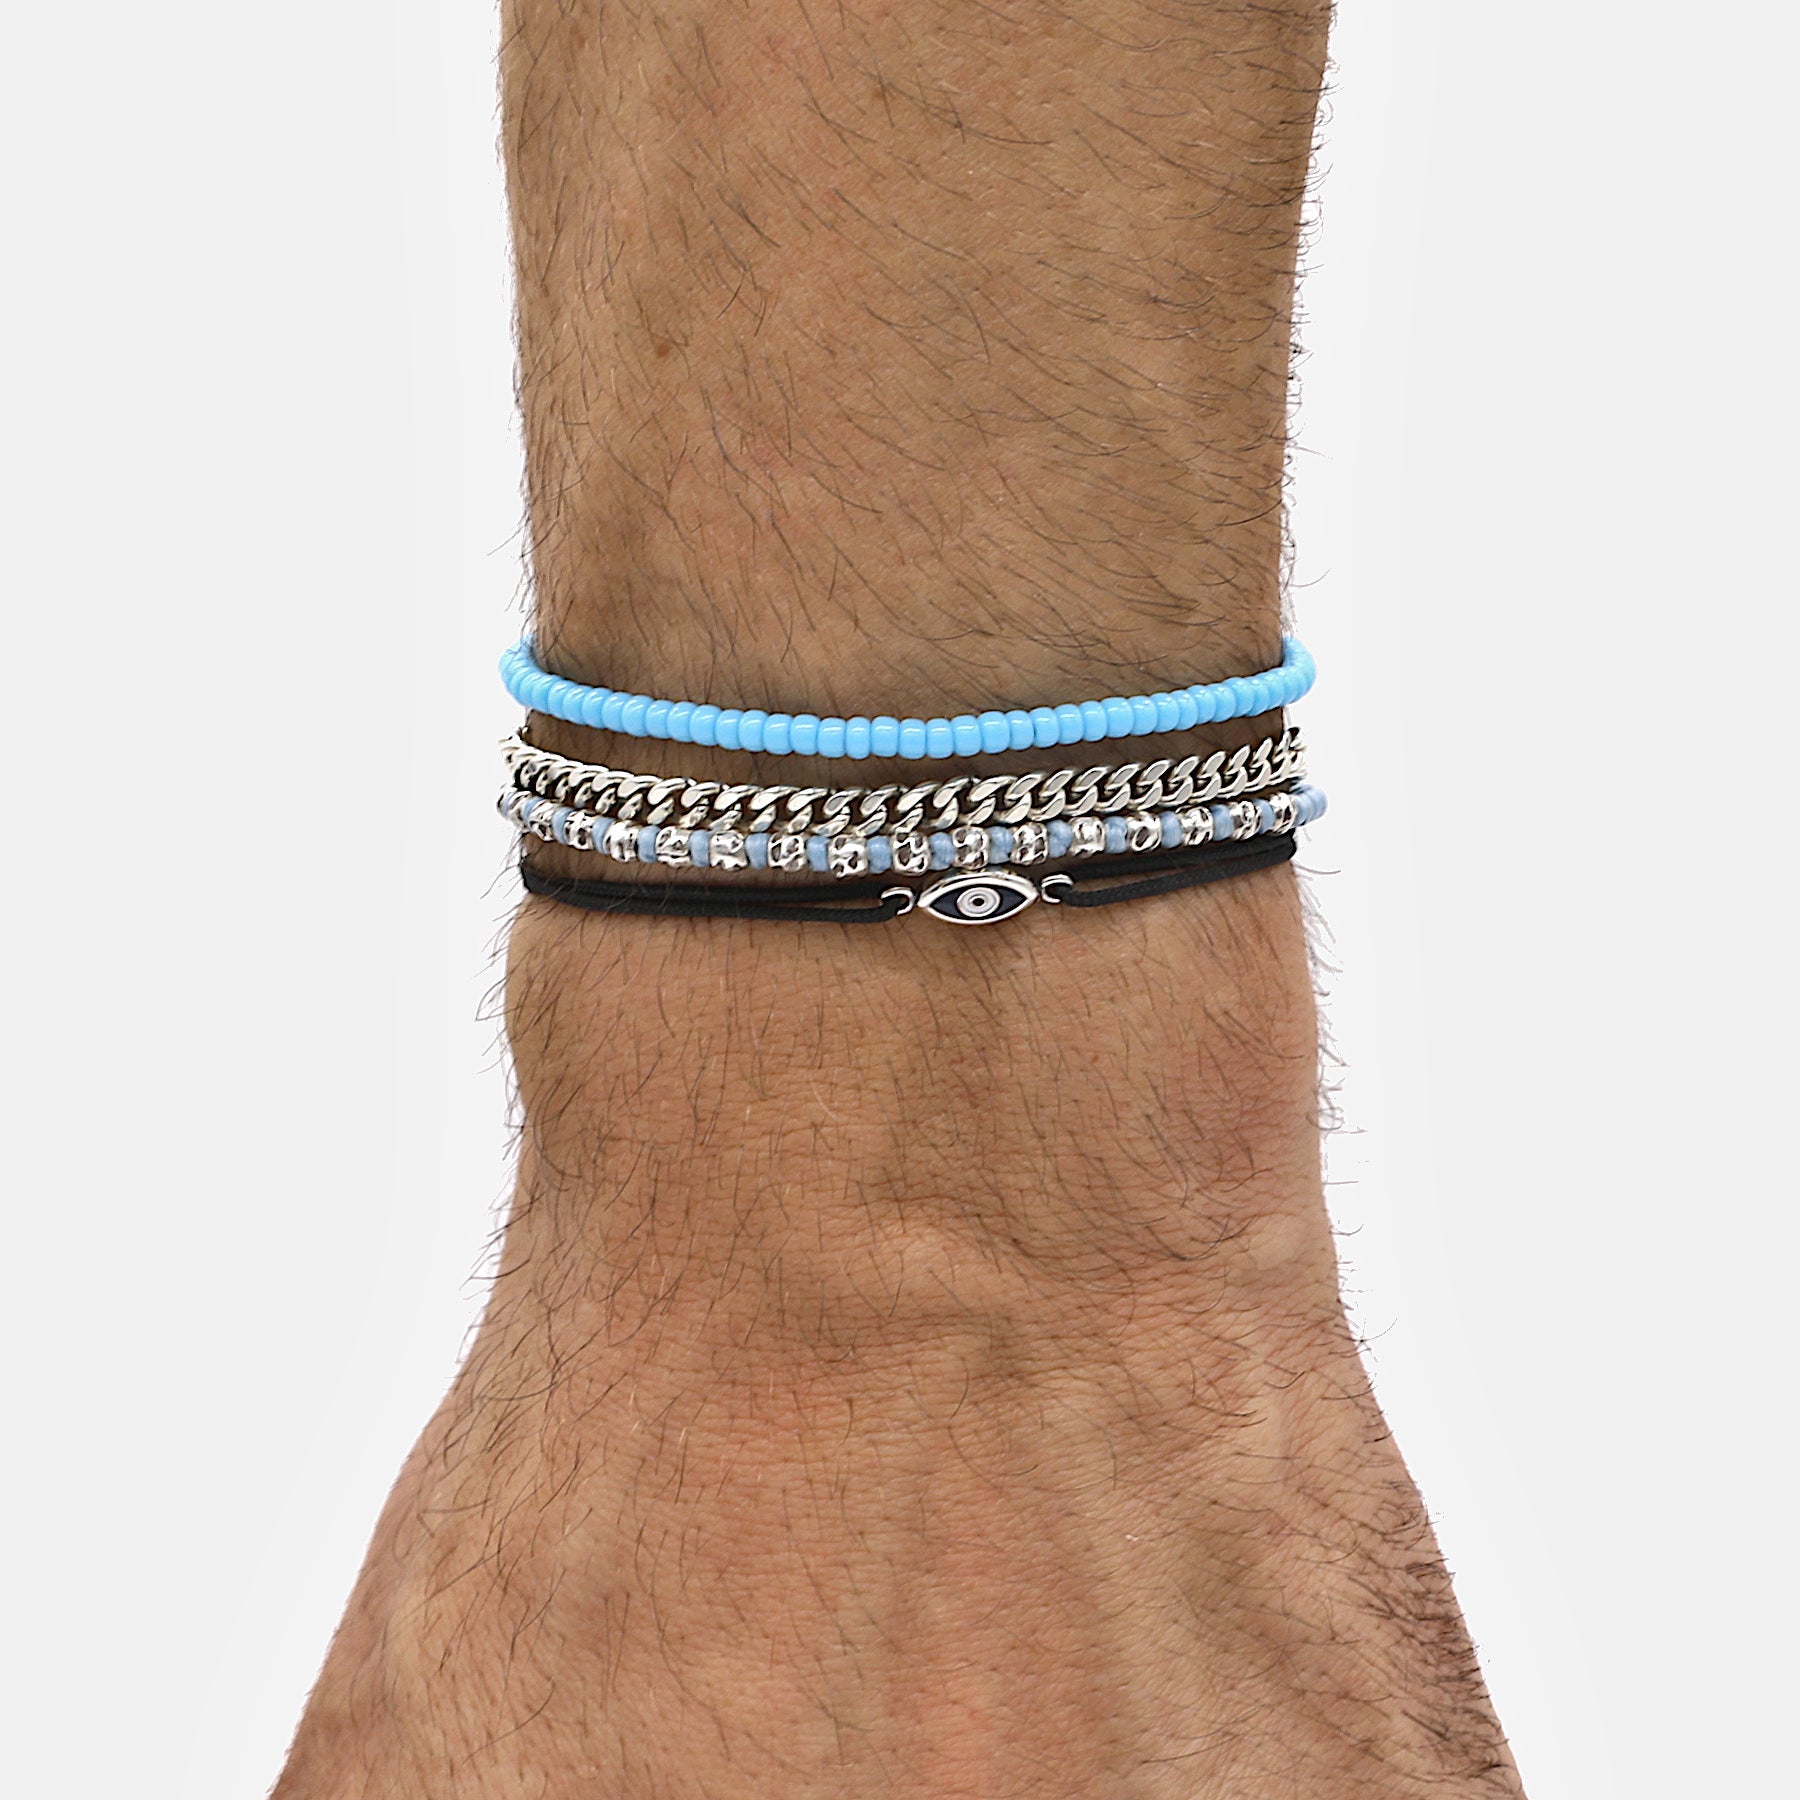 2mm Glass Beads Adjustable Bracelet (Mykonos Blue)-Bracelet-Kompsós